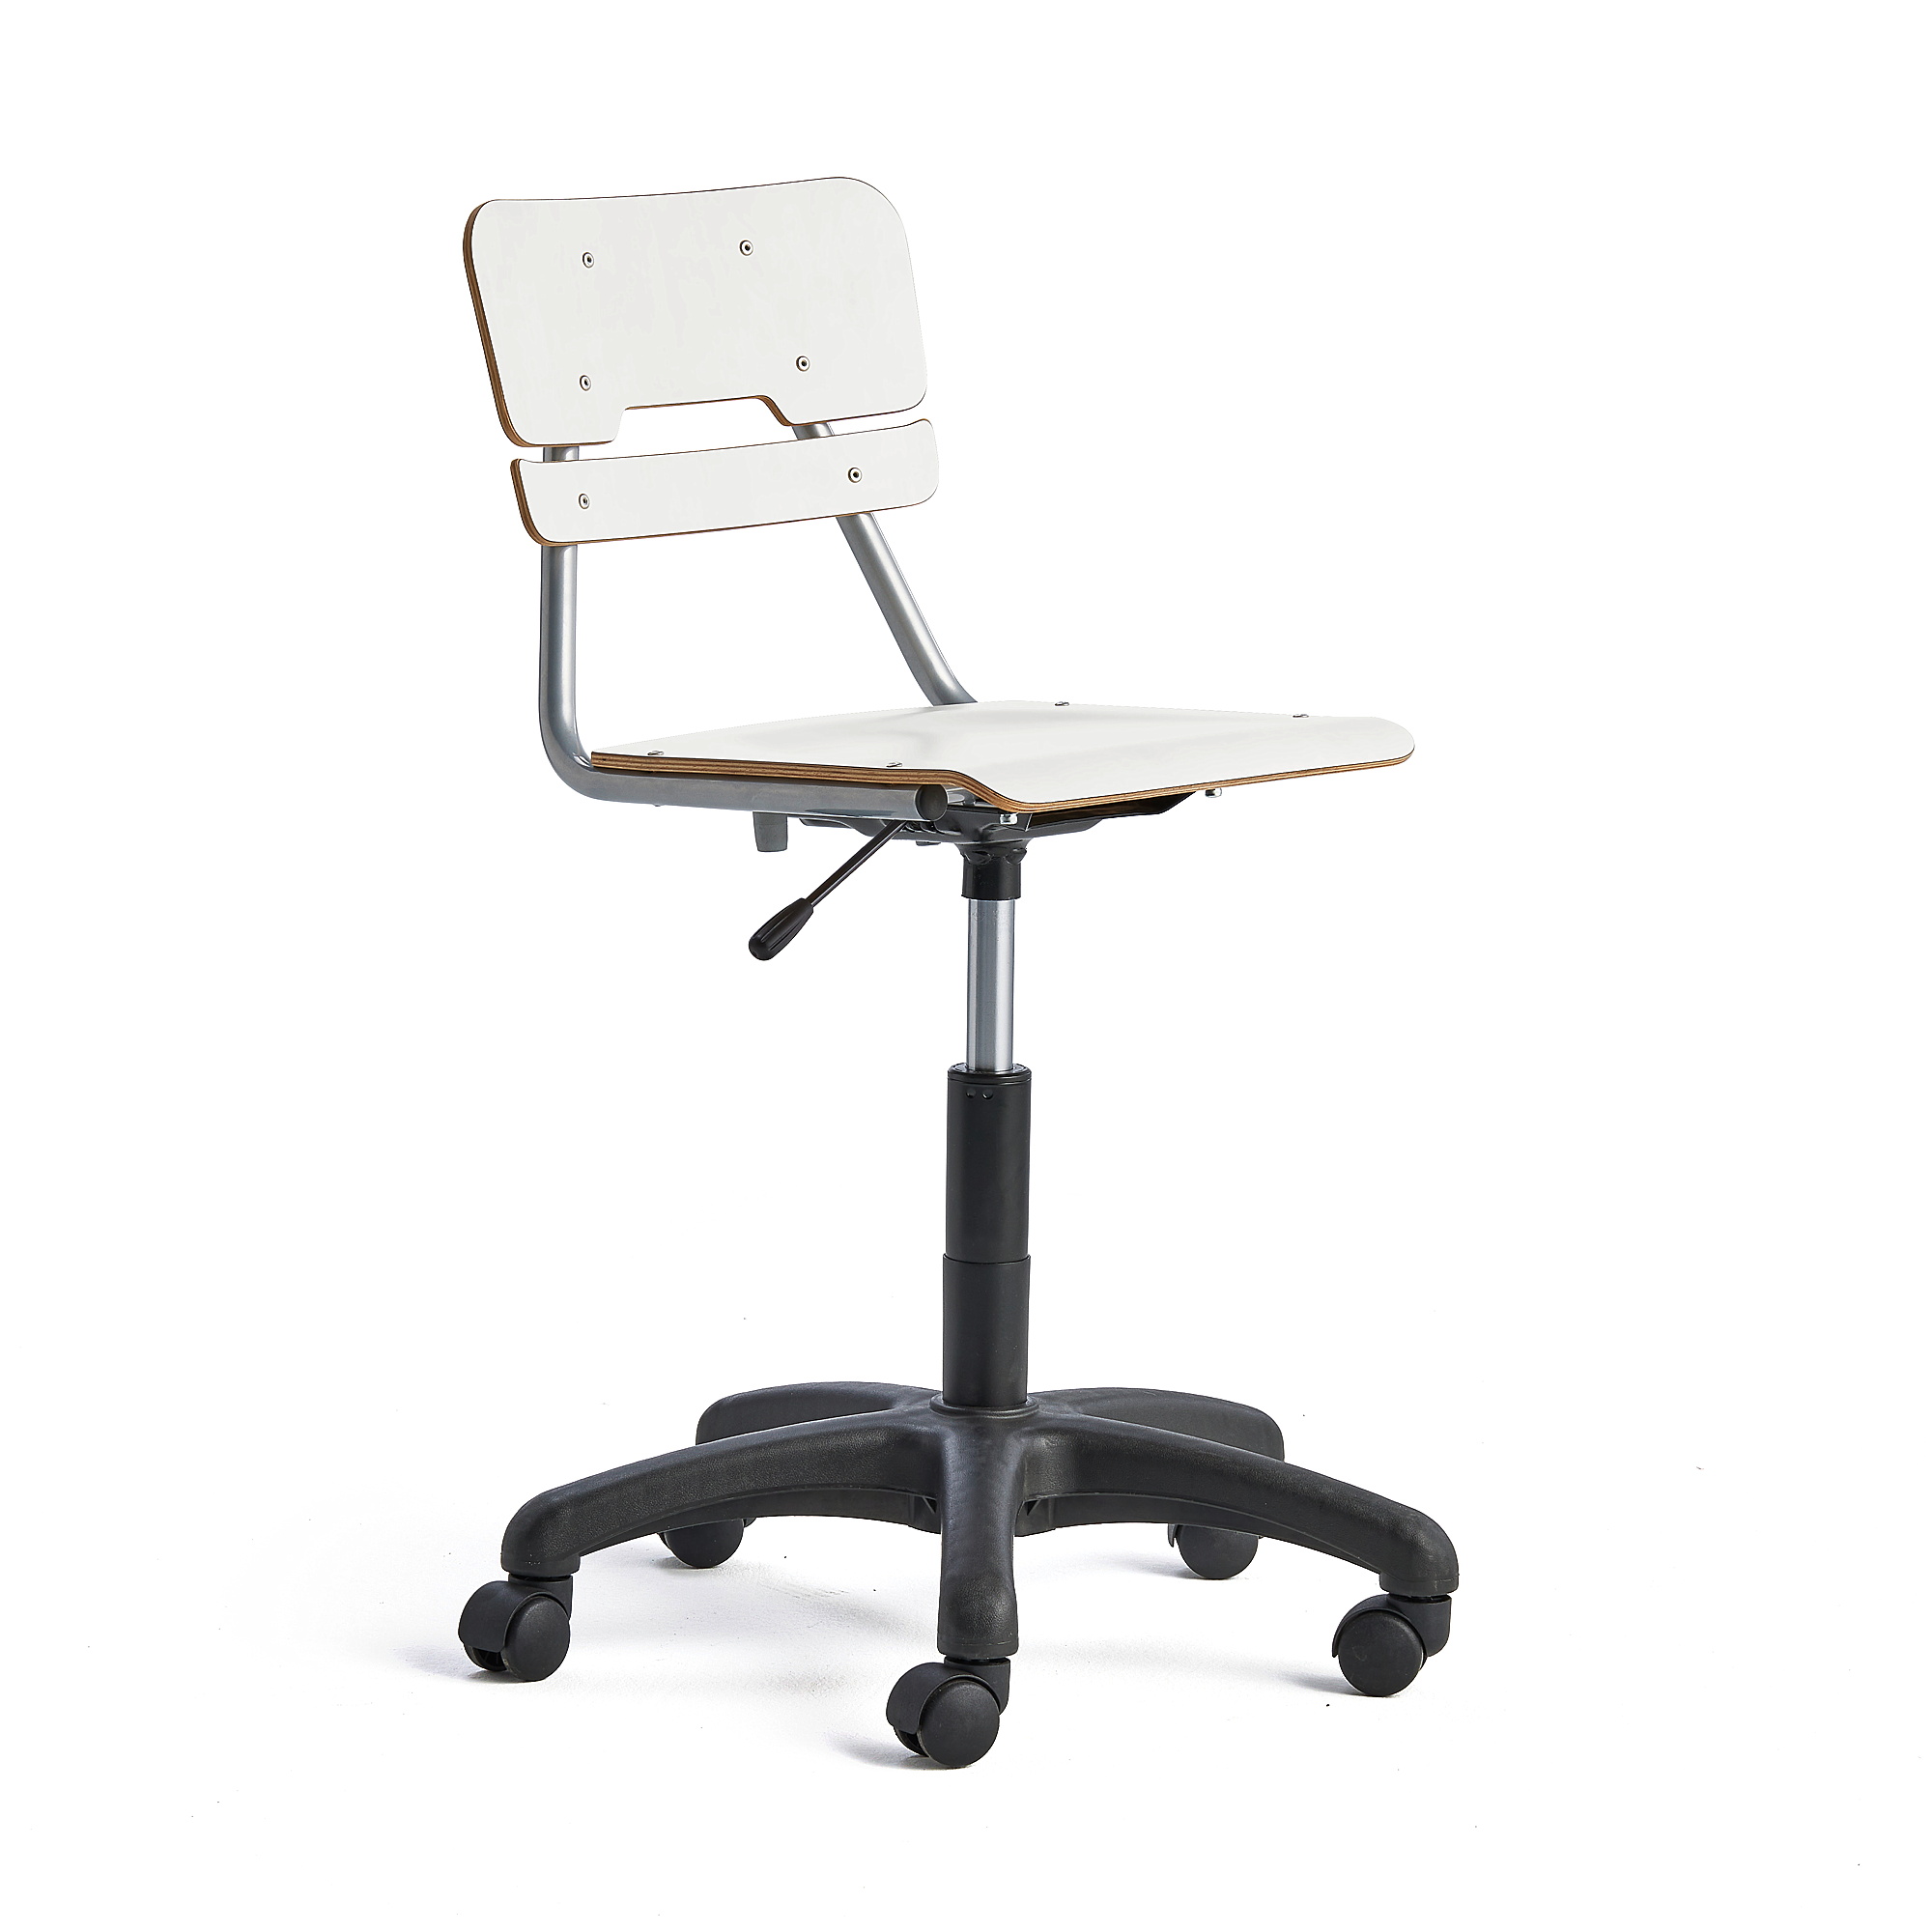 Otočná židle LEGERE, malý sedák, s kolečky, nastavitelná výška 430-550 mm, bílá